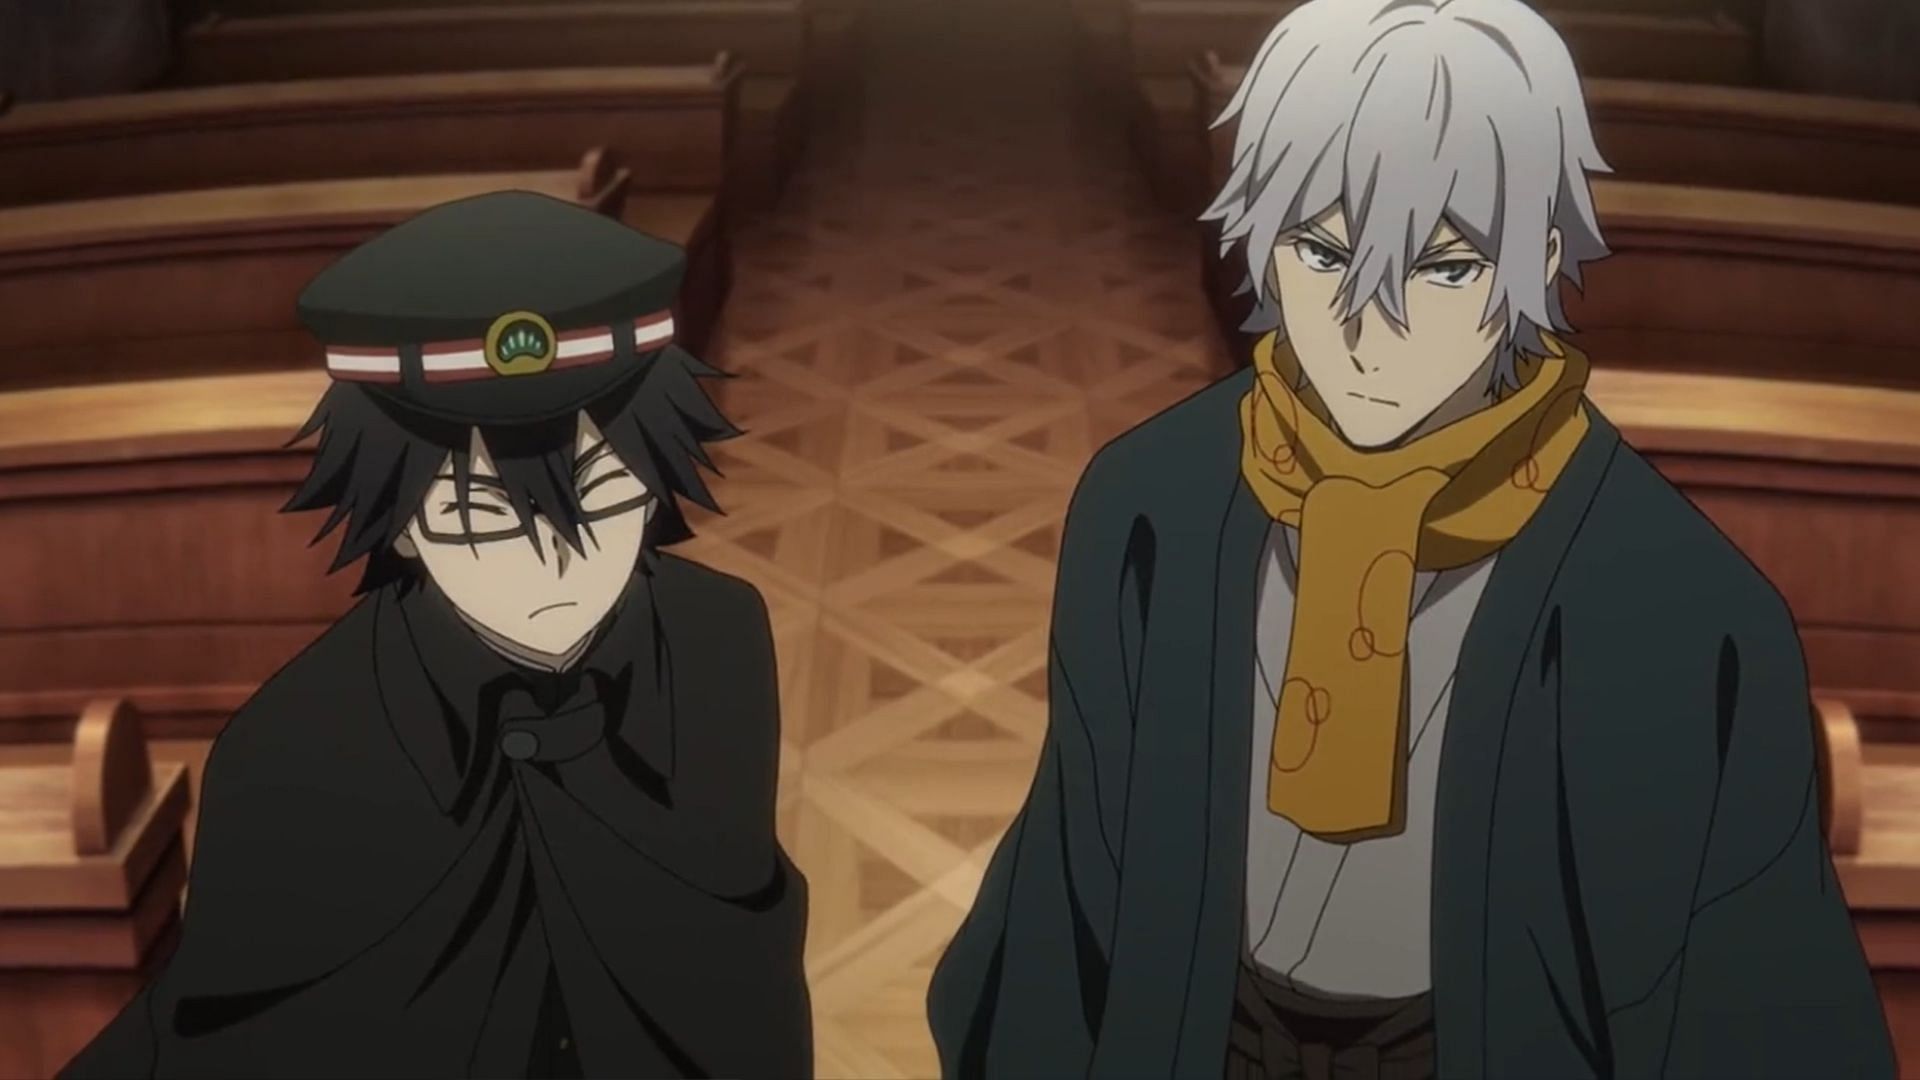 Edogawa and Fukuzawa as seen in the anime (Image via BONES)